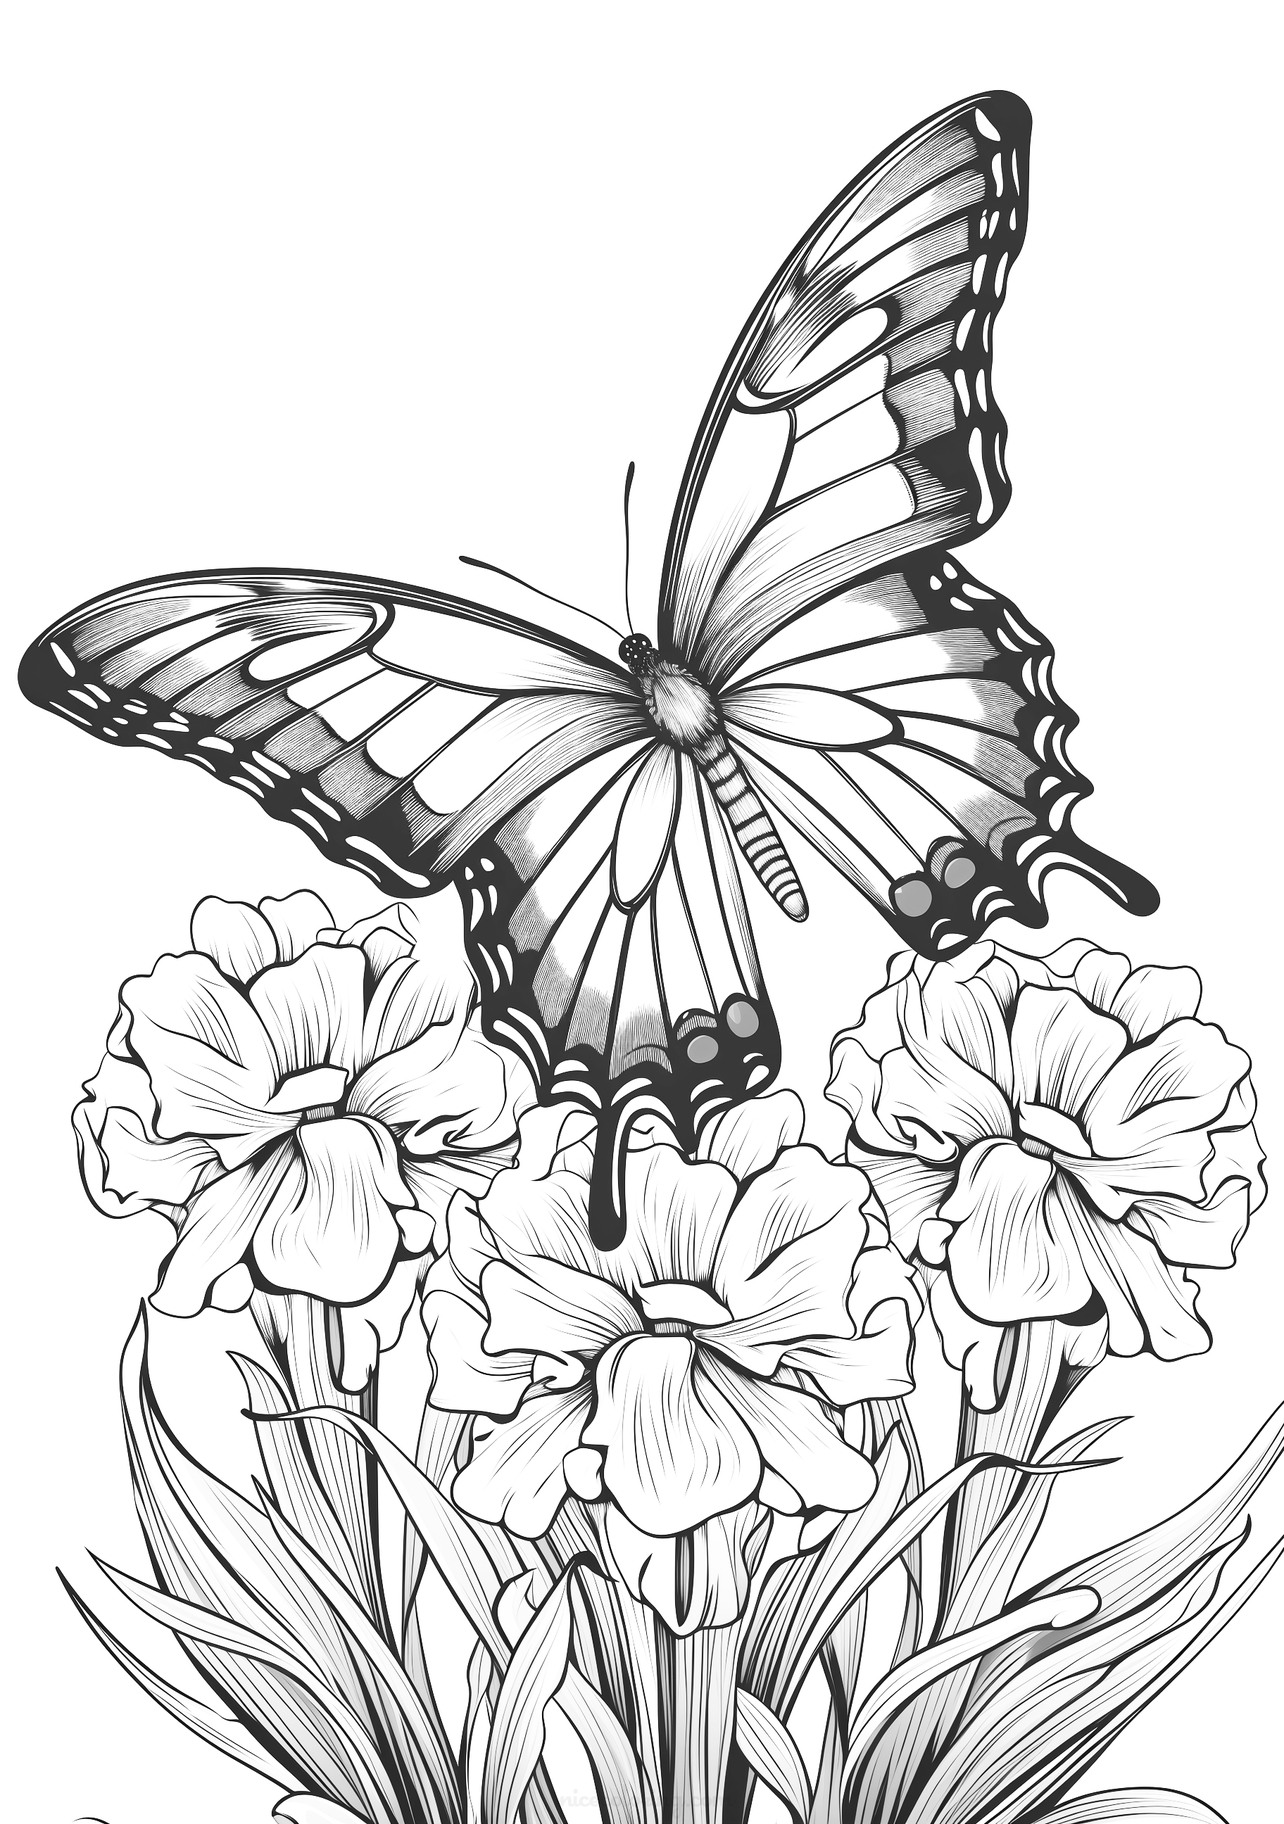 Farfalla con ali spiegate sopra fiori in un disegno da colorare